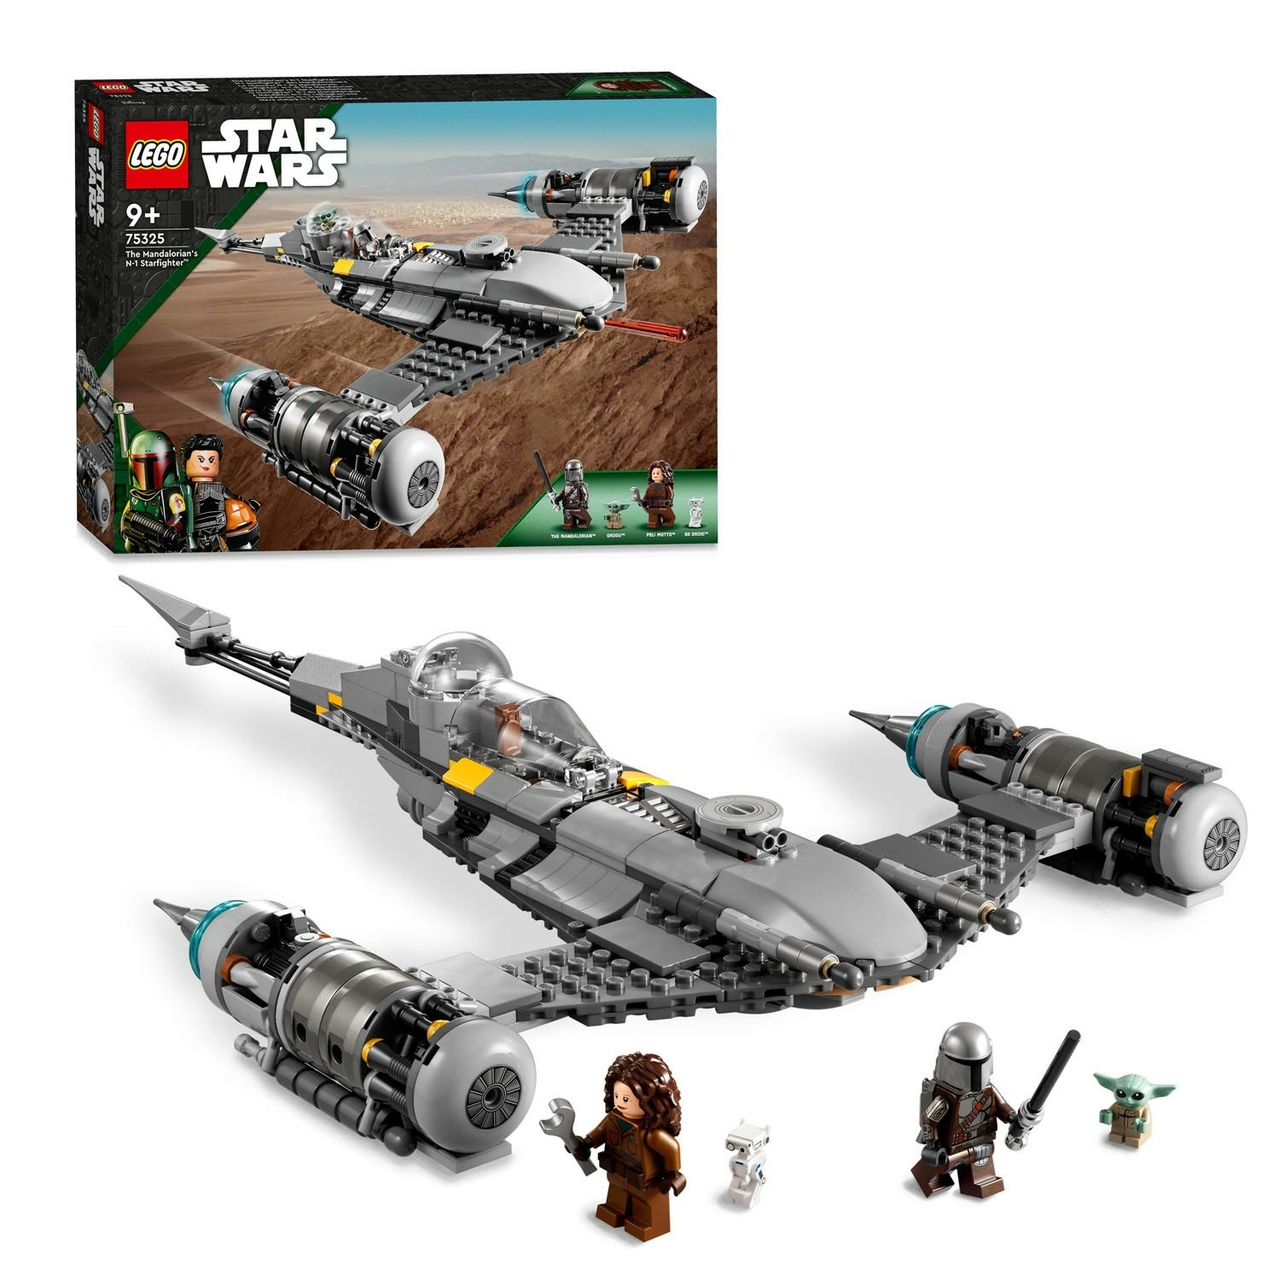 Collectief aangenaam Spijsverteringsorgaan LEGO Star Wars 75325 De Mandalorians N-1 Starfighter - Het Speelgoedpaleis